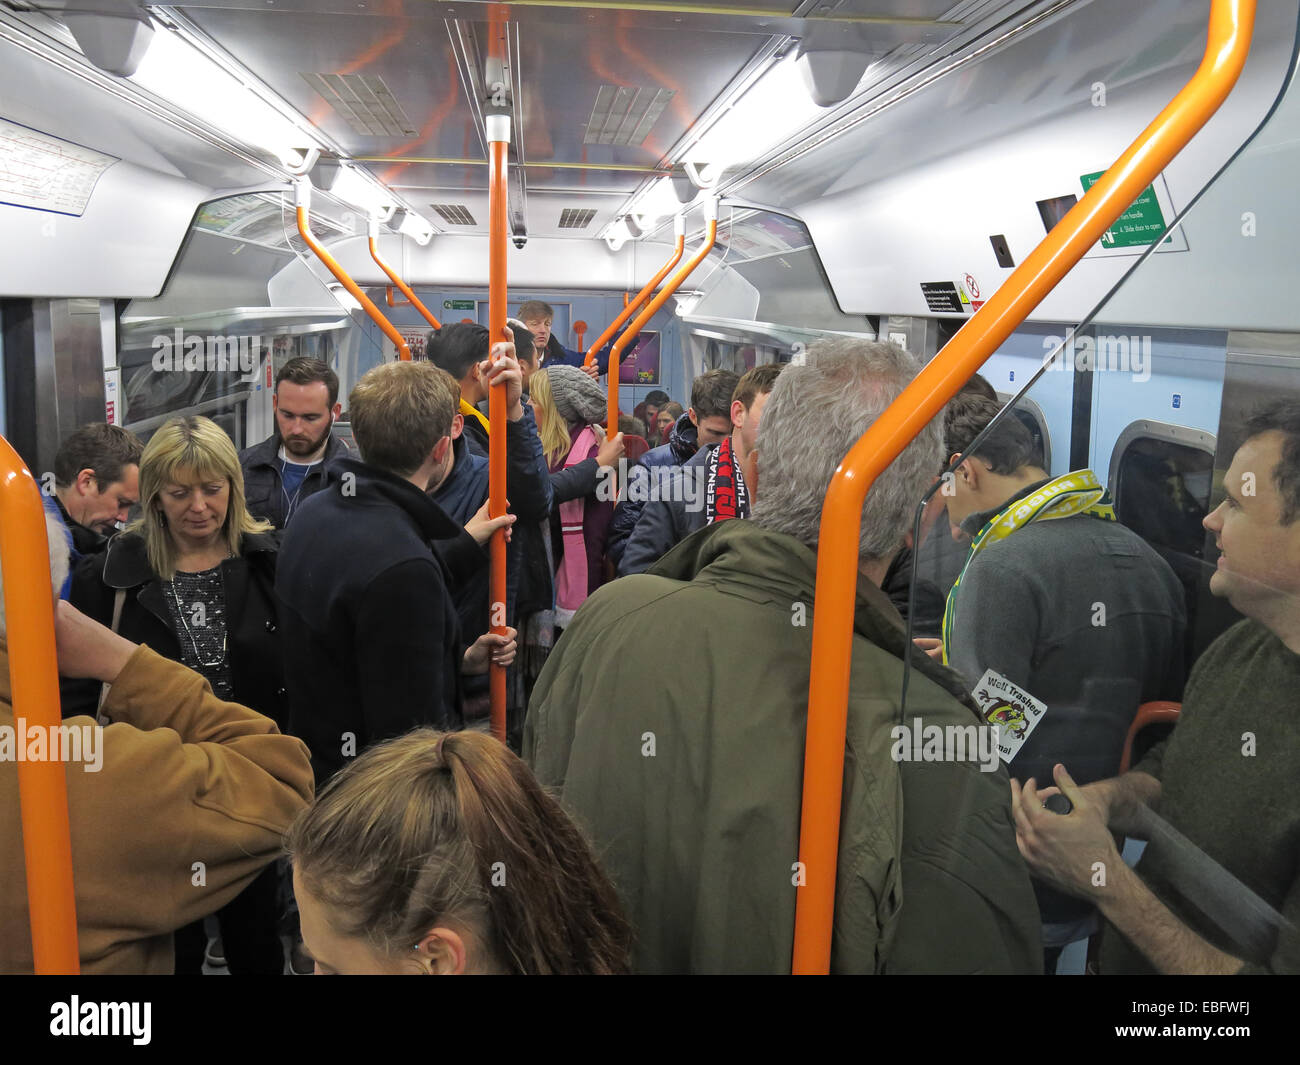 Affollata treno South West bound per London Waterloo stazione ferroviaria, England, Regno Unito Foto Stock